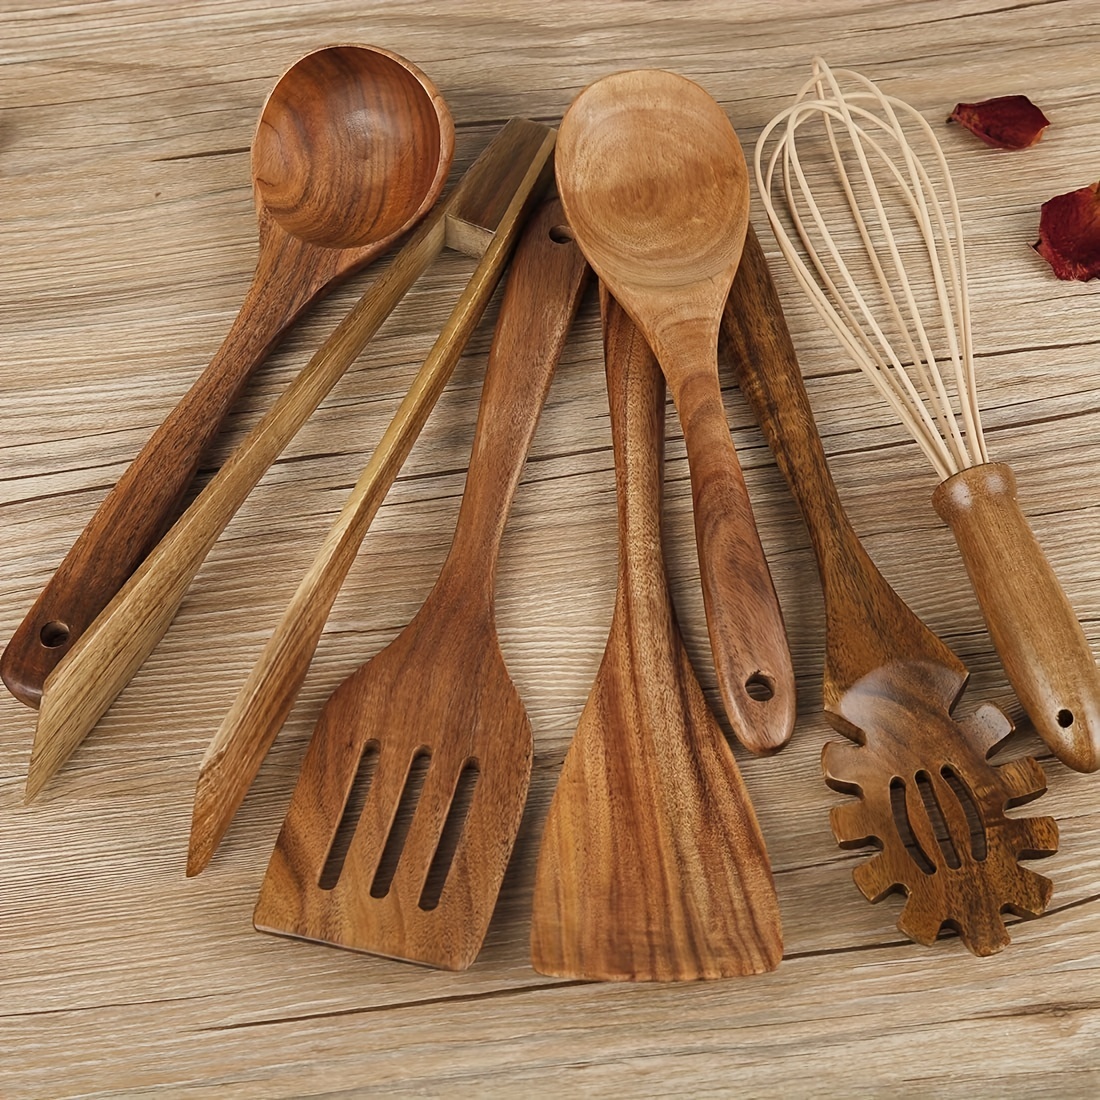 NAYAHOSE Cucharas de madera para cocinar, juego de 8 utensilios de cocina  de madera para cocina, cucharas de cocina antiadherentes de madera de teca